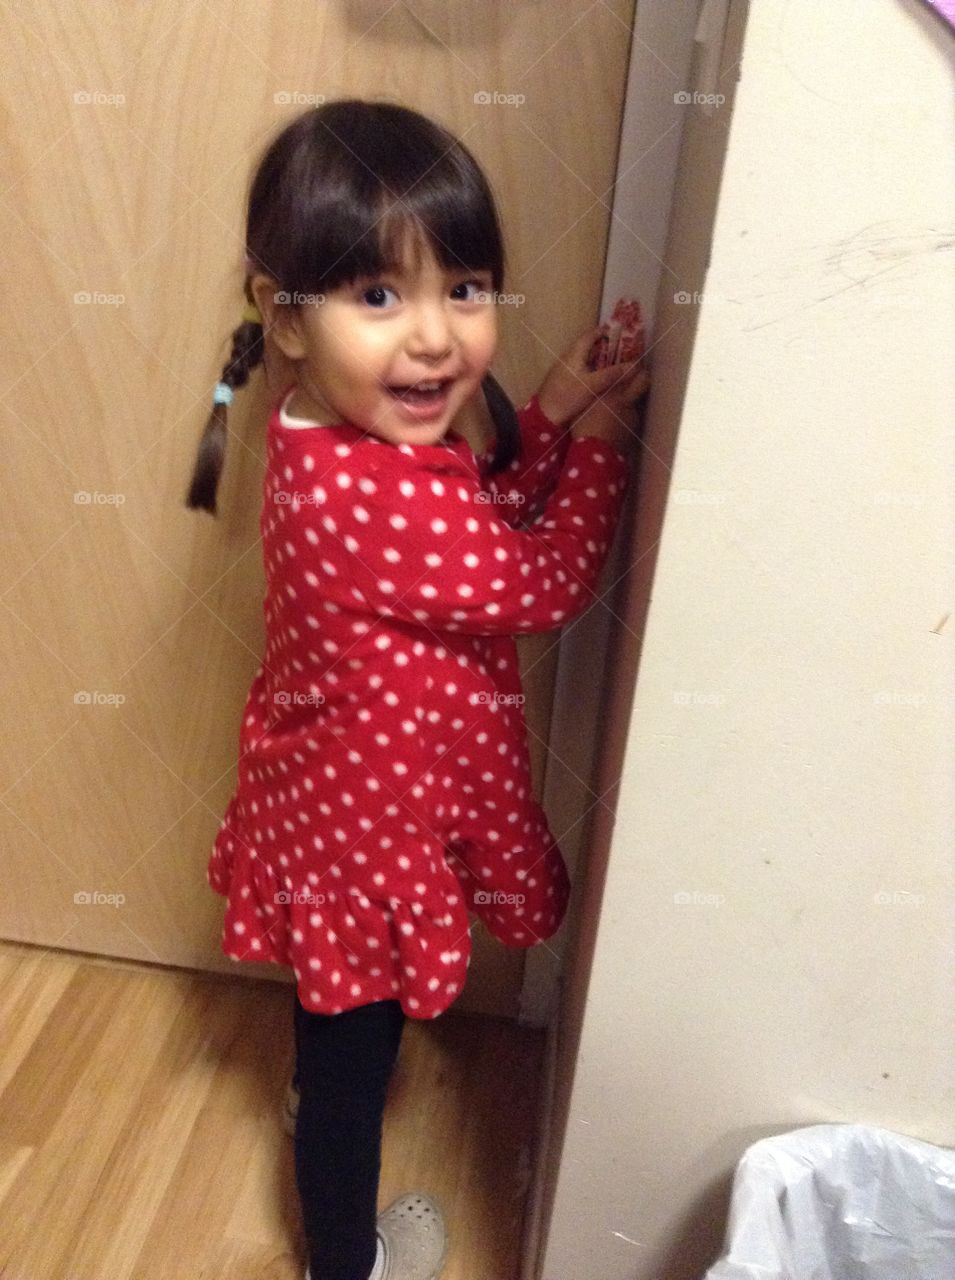 Smiling girl holding door handle